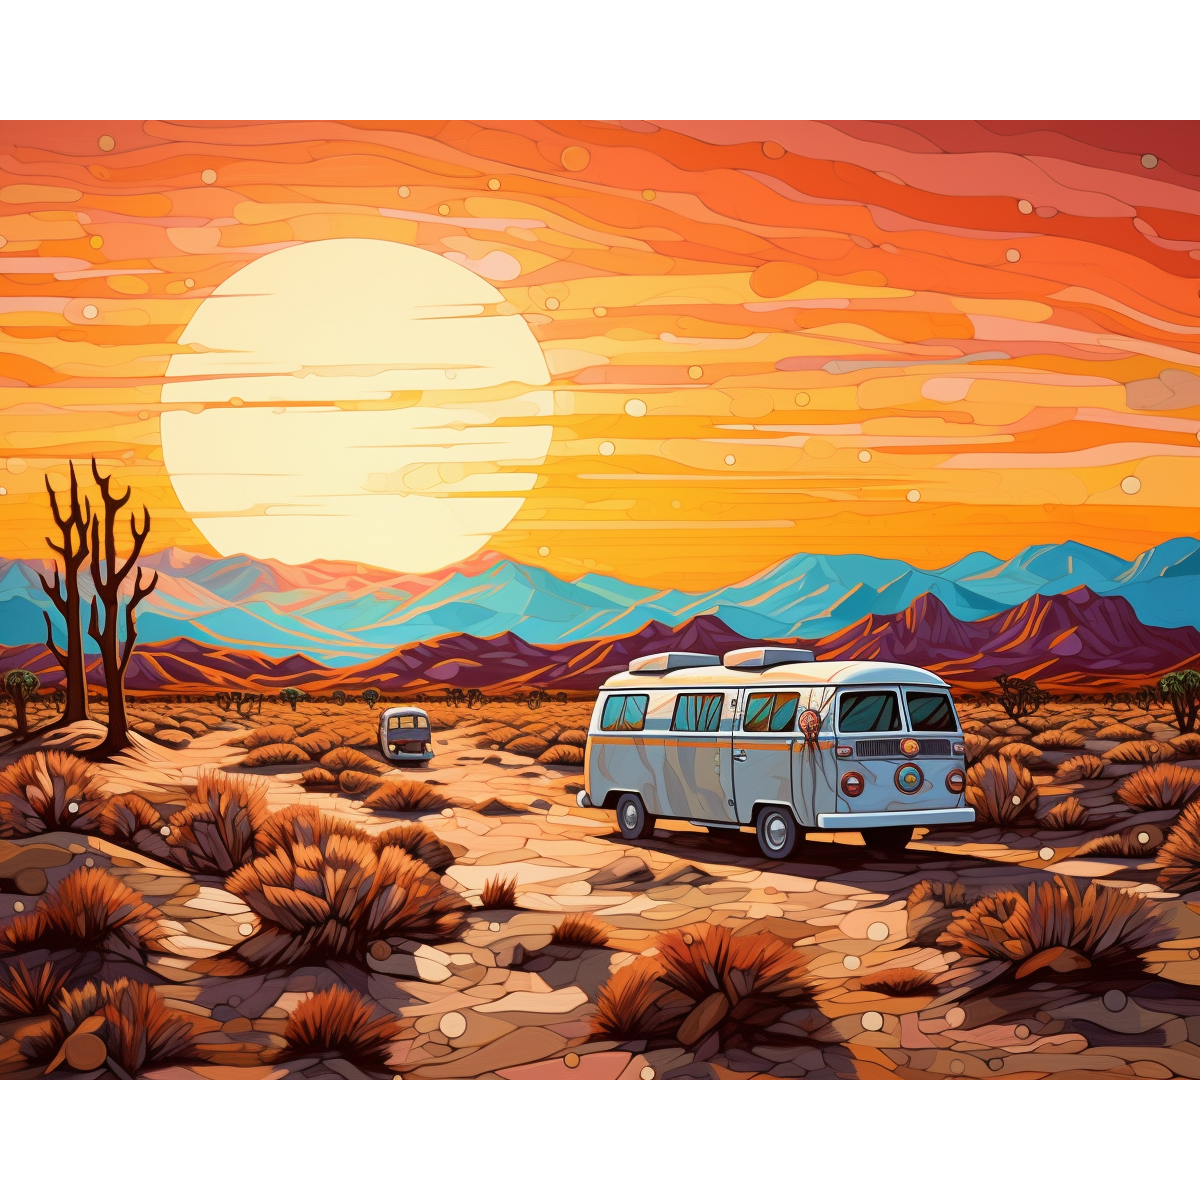 عربة غروب الشمس في الصحراء